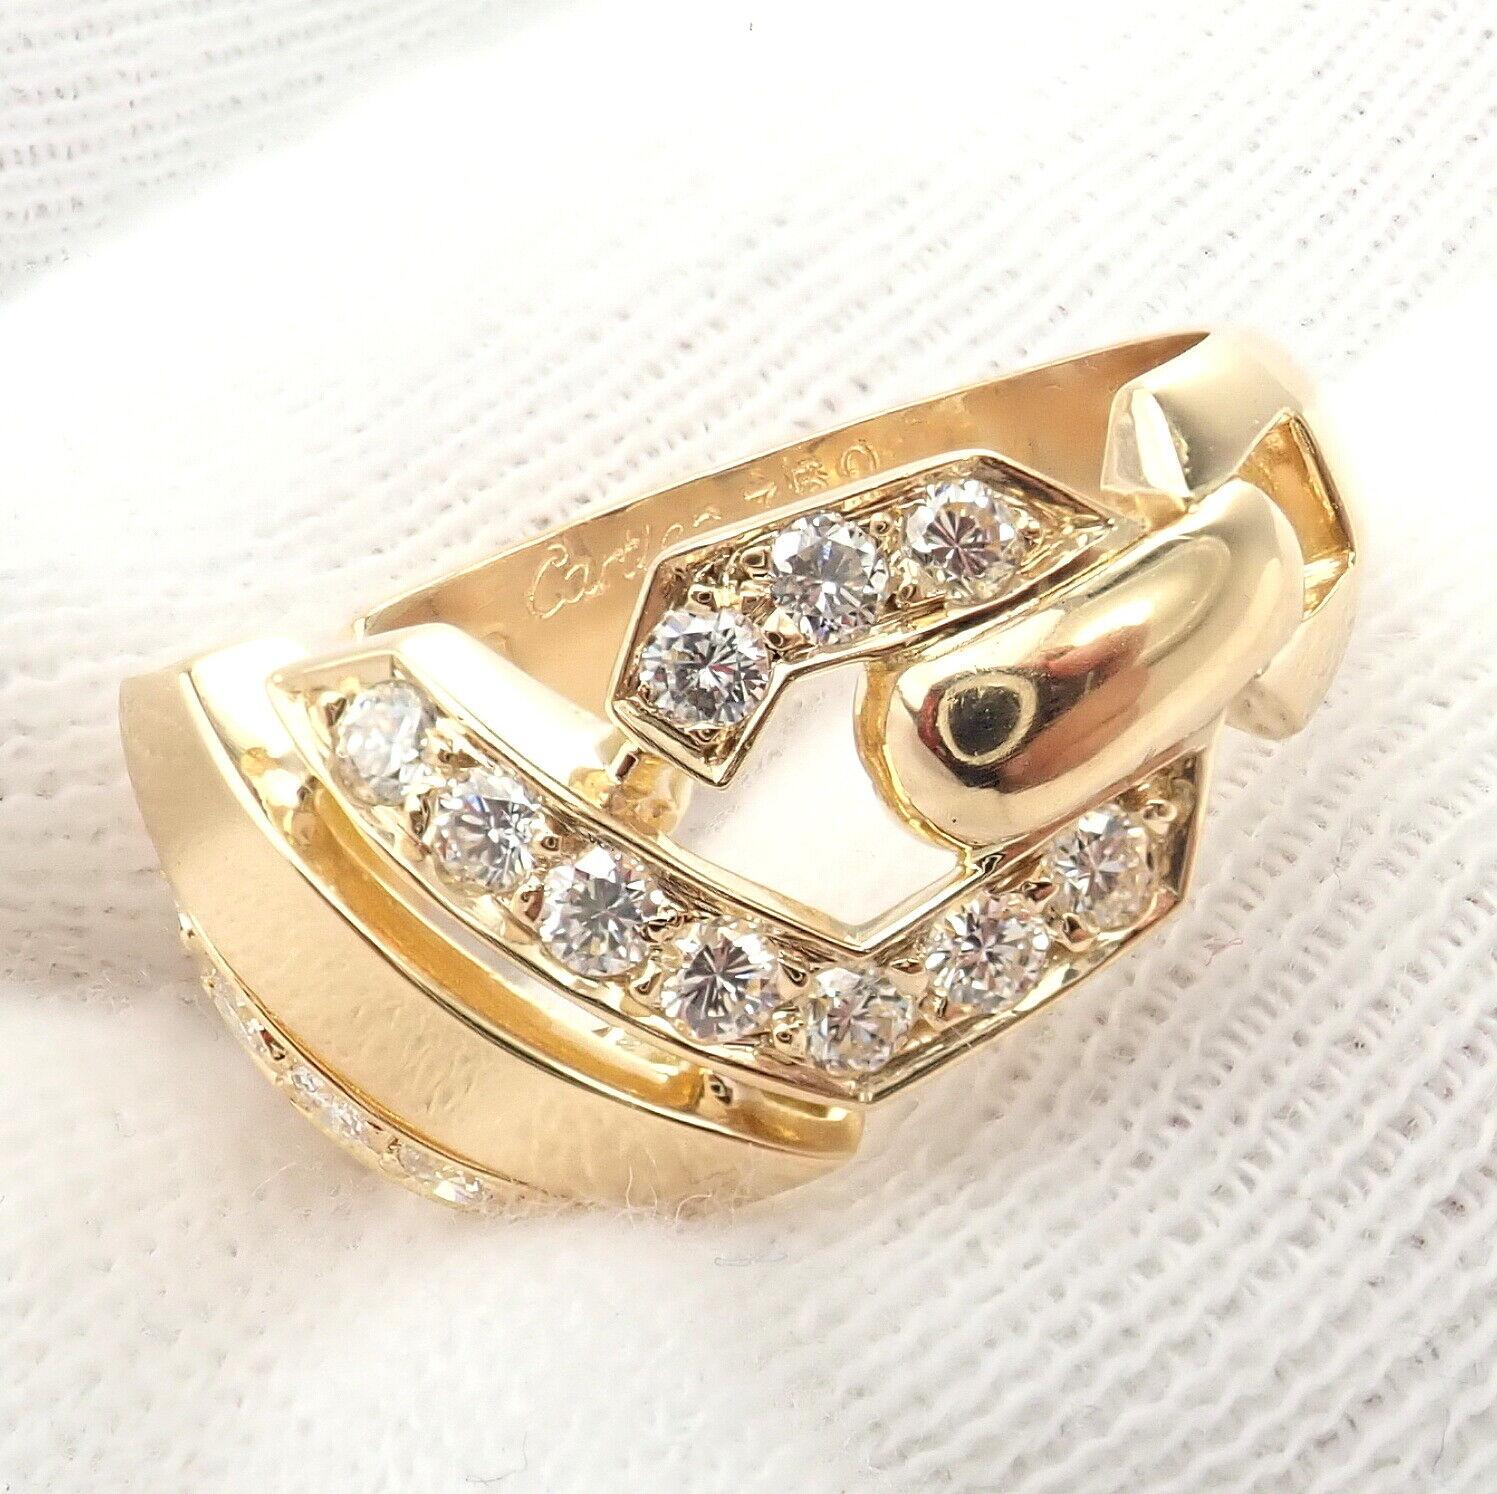 18k Gelbgold Fox Trot Diamond Ring von Cartier aus den 1980er Jahren Ringgröße 6,5. 
Mit 20 runden Diamanten im Brillantschliff VVS1 Reinheit, E Farbe Gesamtgewicht ca. 0,50ct
Dieser atemberaubende Ring wird mit einer Cartier-Box